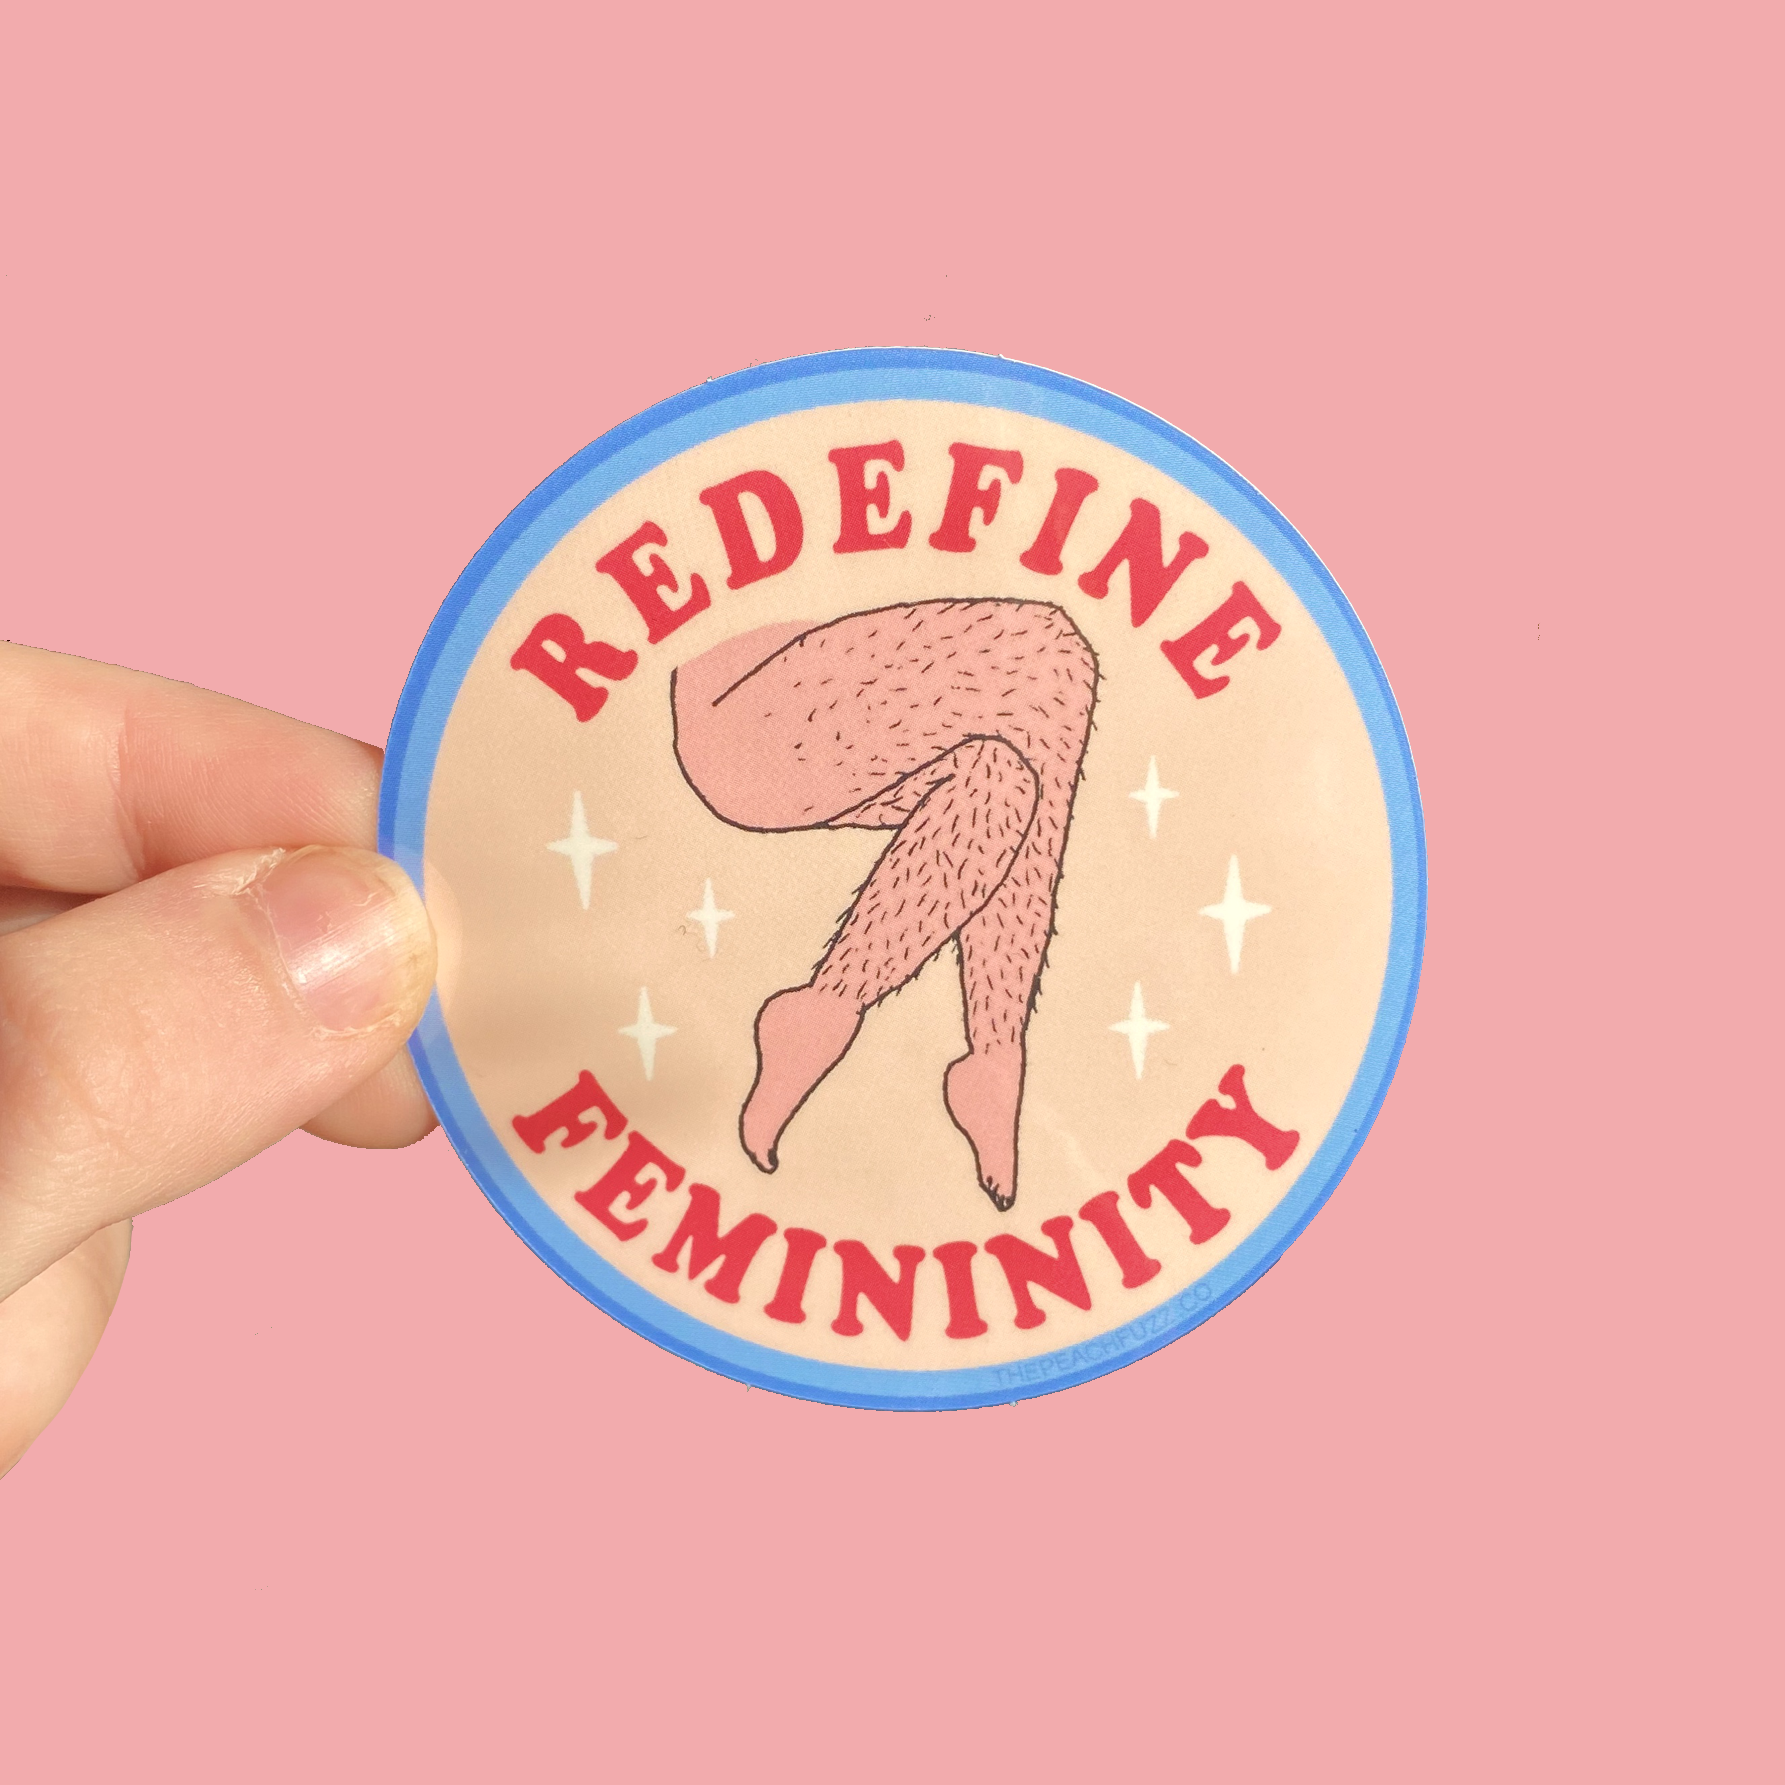 The Peach Fuzz Redefine Femininity Sticker